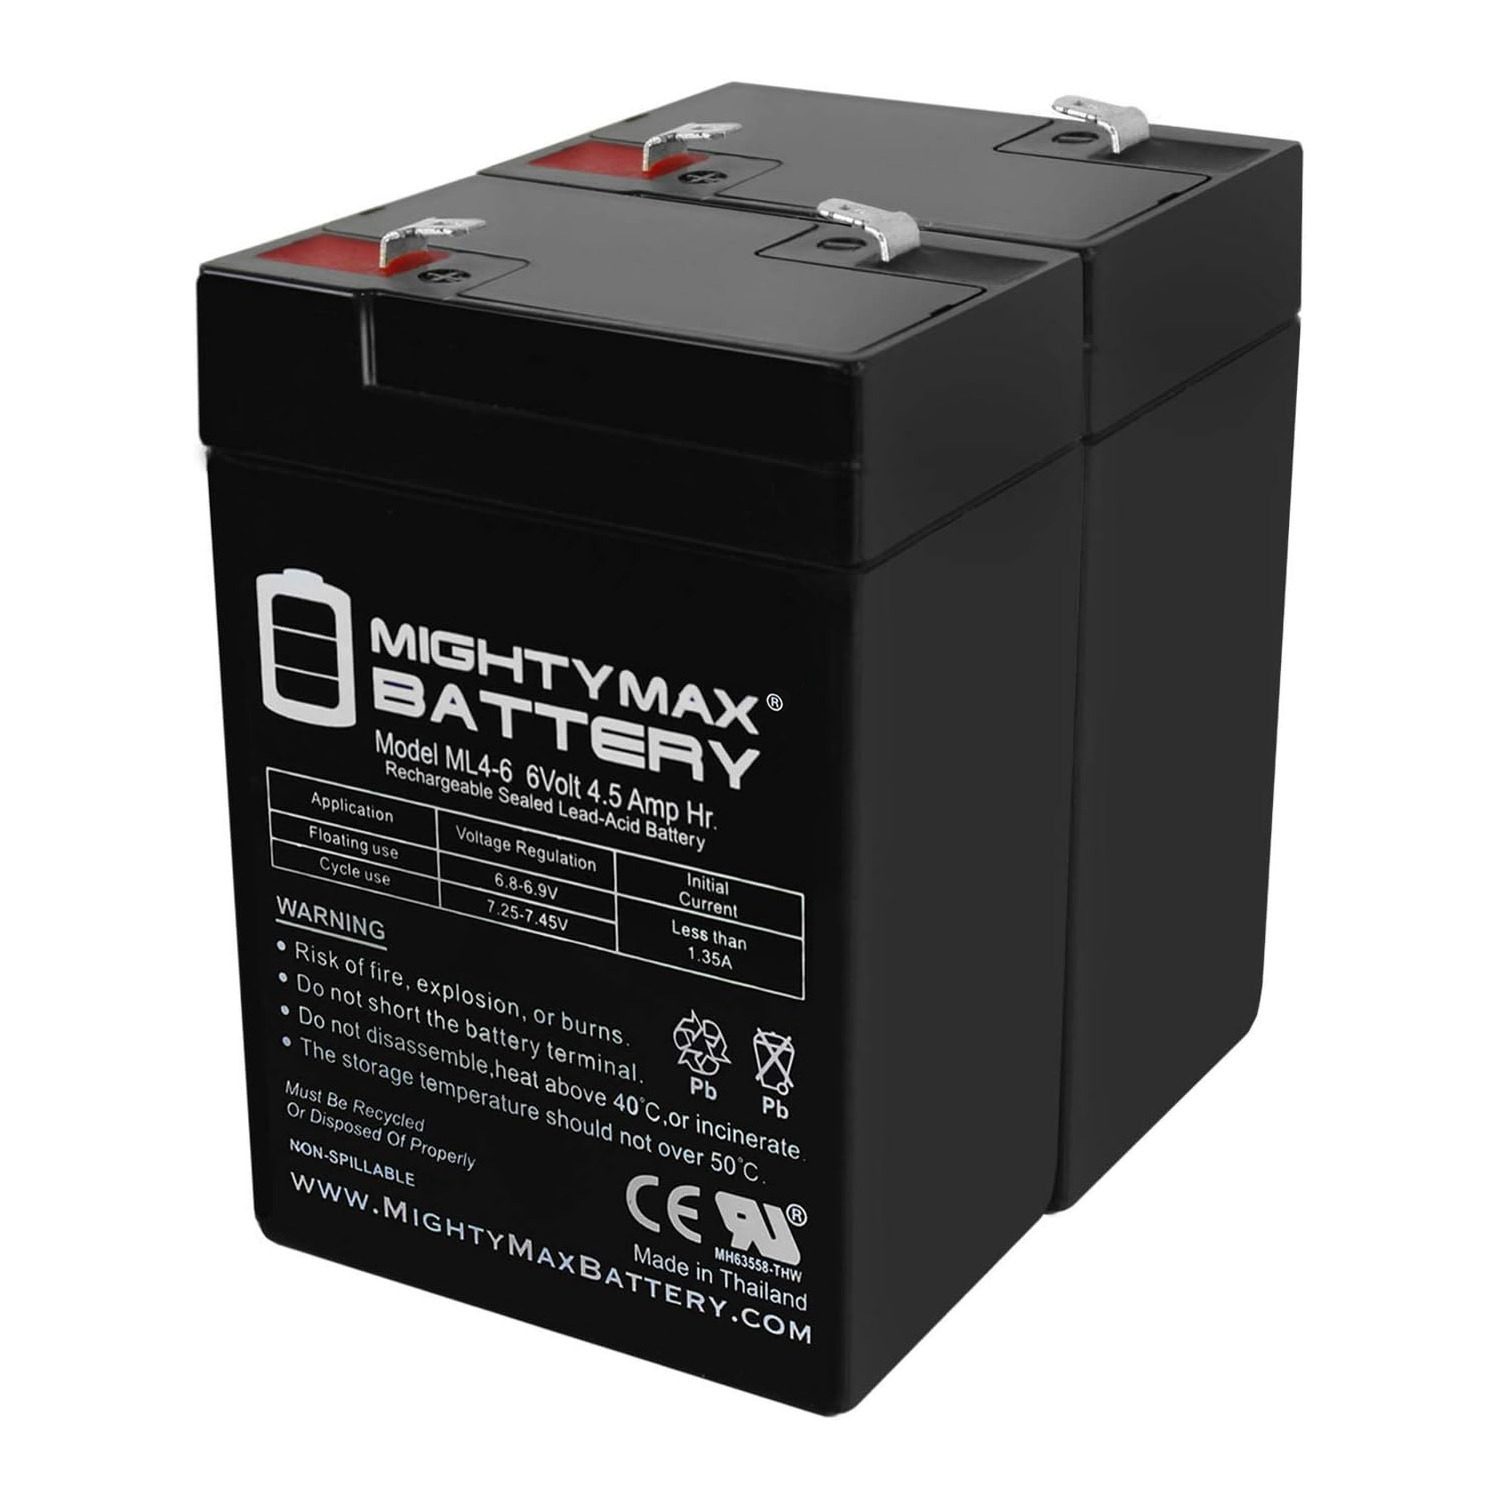 6V 4.5AH SLA Replacement Battery for Emergi-Lite 6LSM6 - 2 Pack